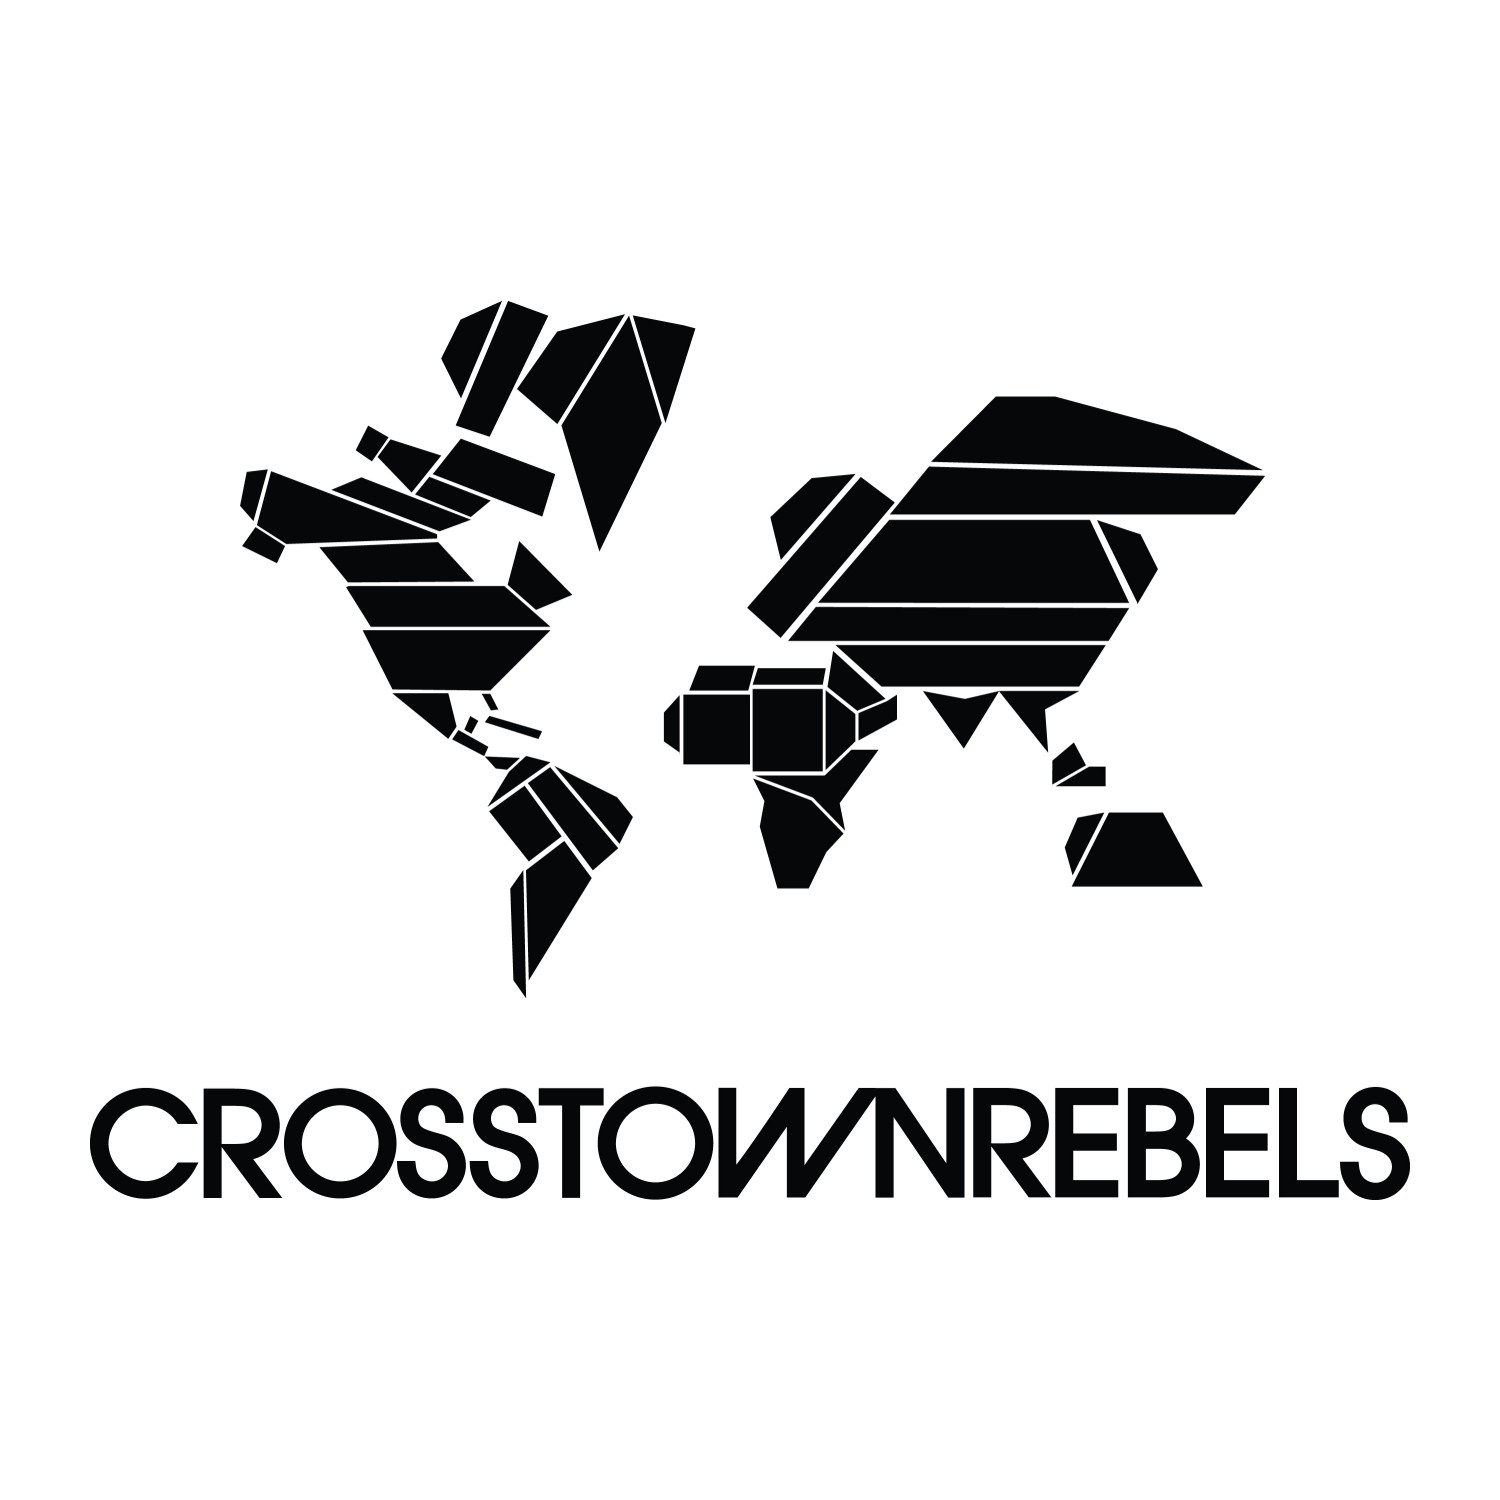 Crosstown Rebels